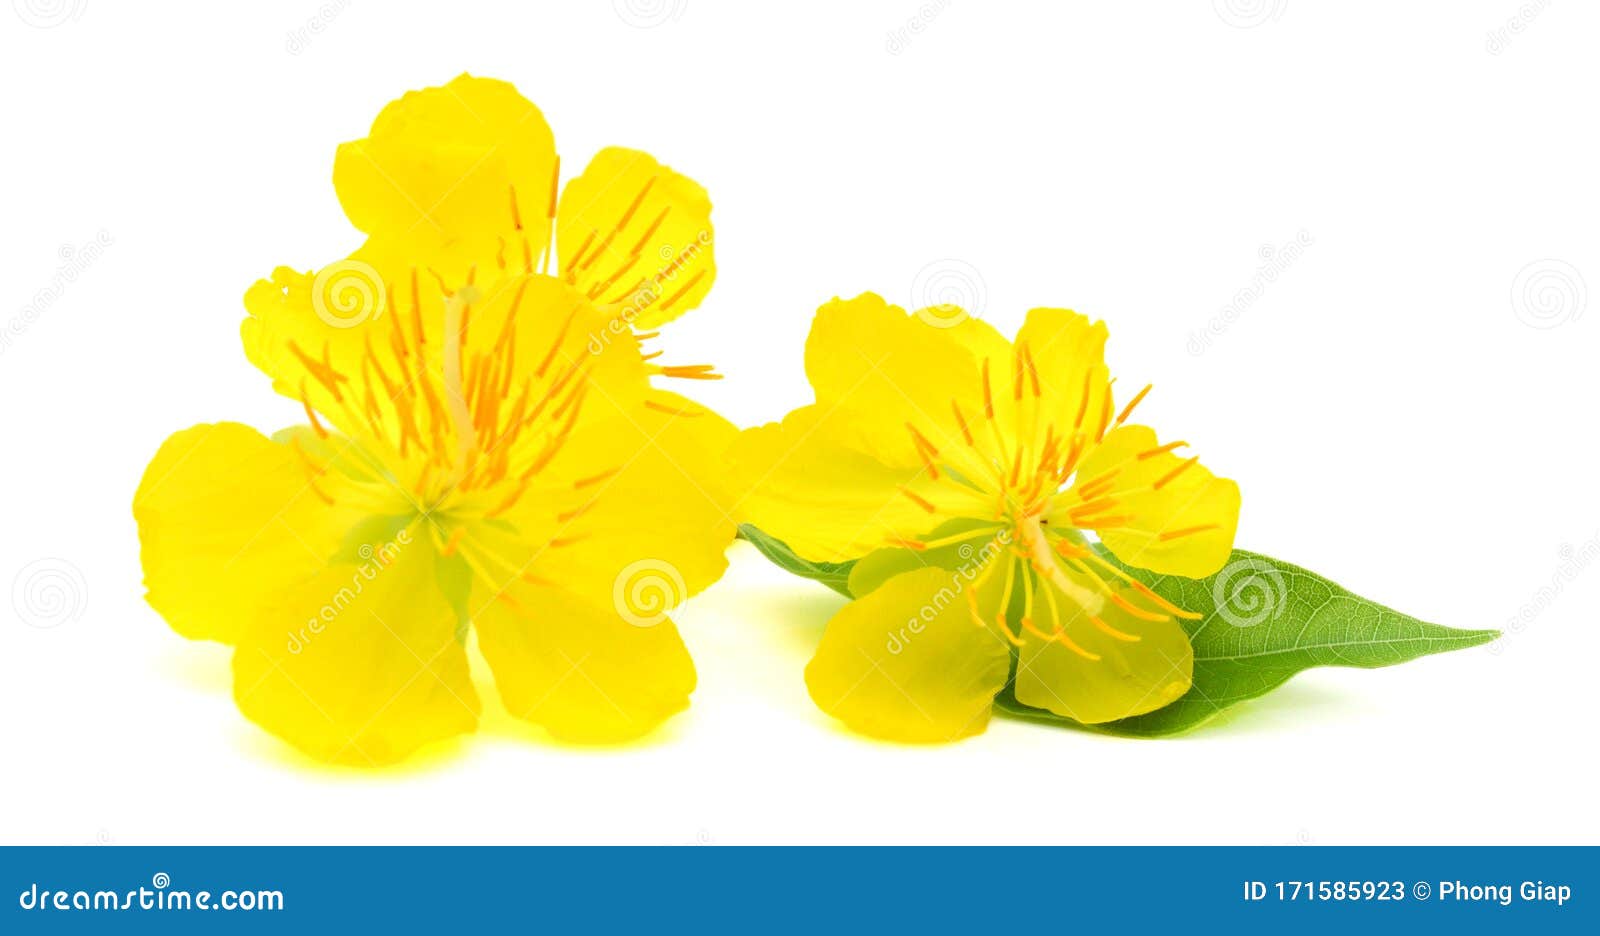 Chào đón Tết Nguyên Đán với vẻ đẹp tuyệt vời của Hoa Mai Vàng. Loại hoa này không chỉ đẹp mắt mà còn đại diện cho sự may mắn và tài lộc. Hãy chiêm ngưỡng hình ảnh này và cảm nhận được niềm hạnh phúc và niềm vui trong ngày Tết.